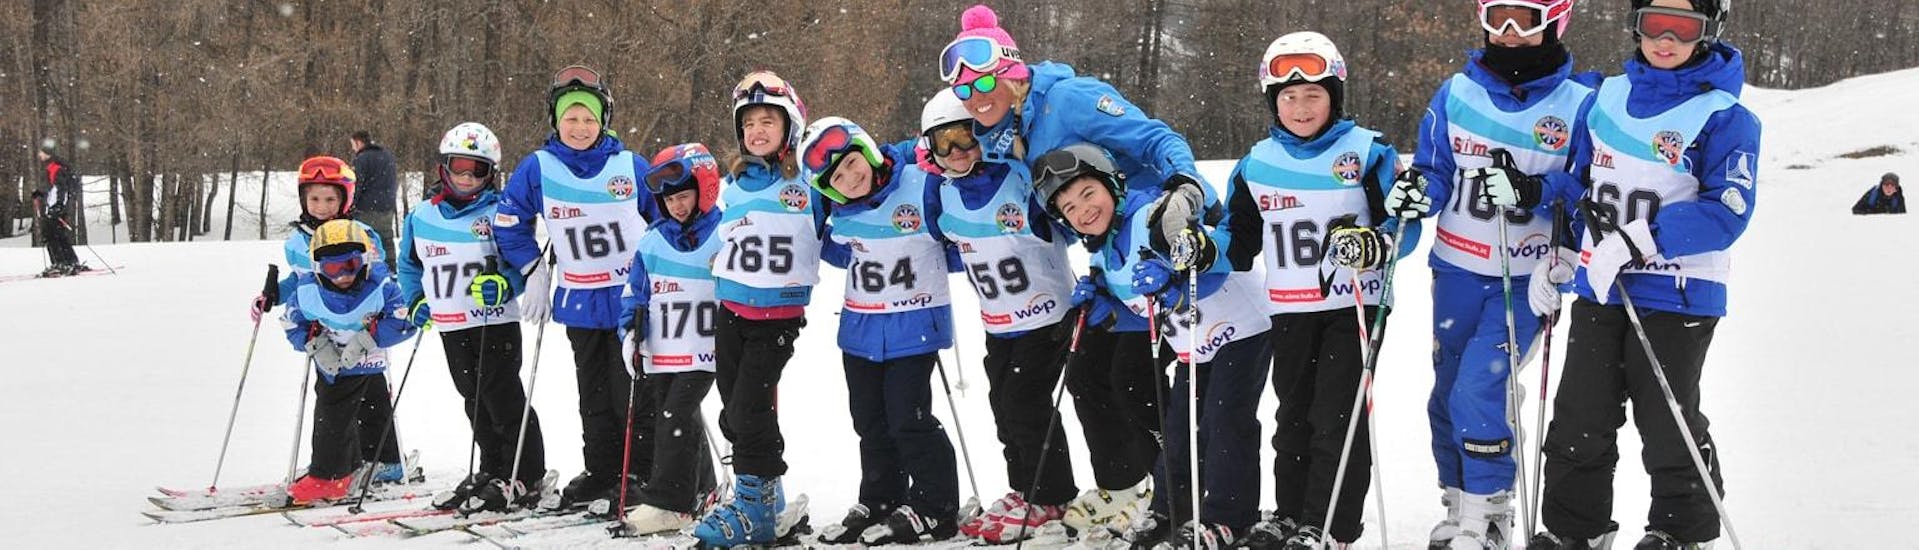 Un gruppo di piccoli appassionati di sci durante le Lezioni di sci per bambini (4-14 anni) - Alta Stagione - Avanzati organizzate dalla scuola di sci Scuola di Sci Bardonecchia.